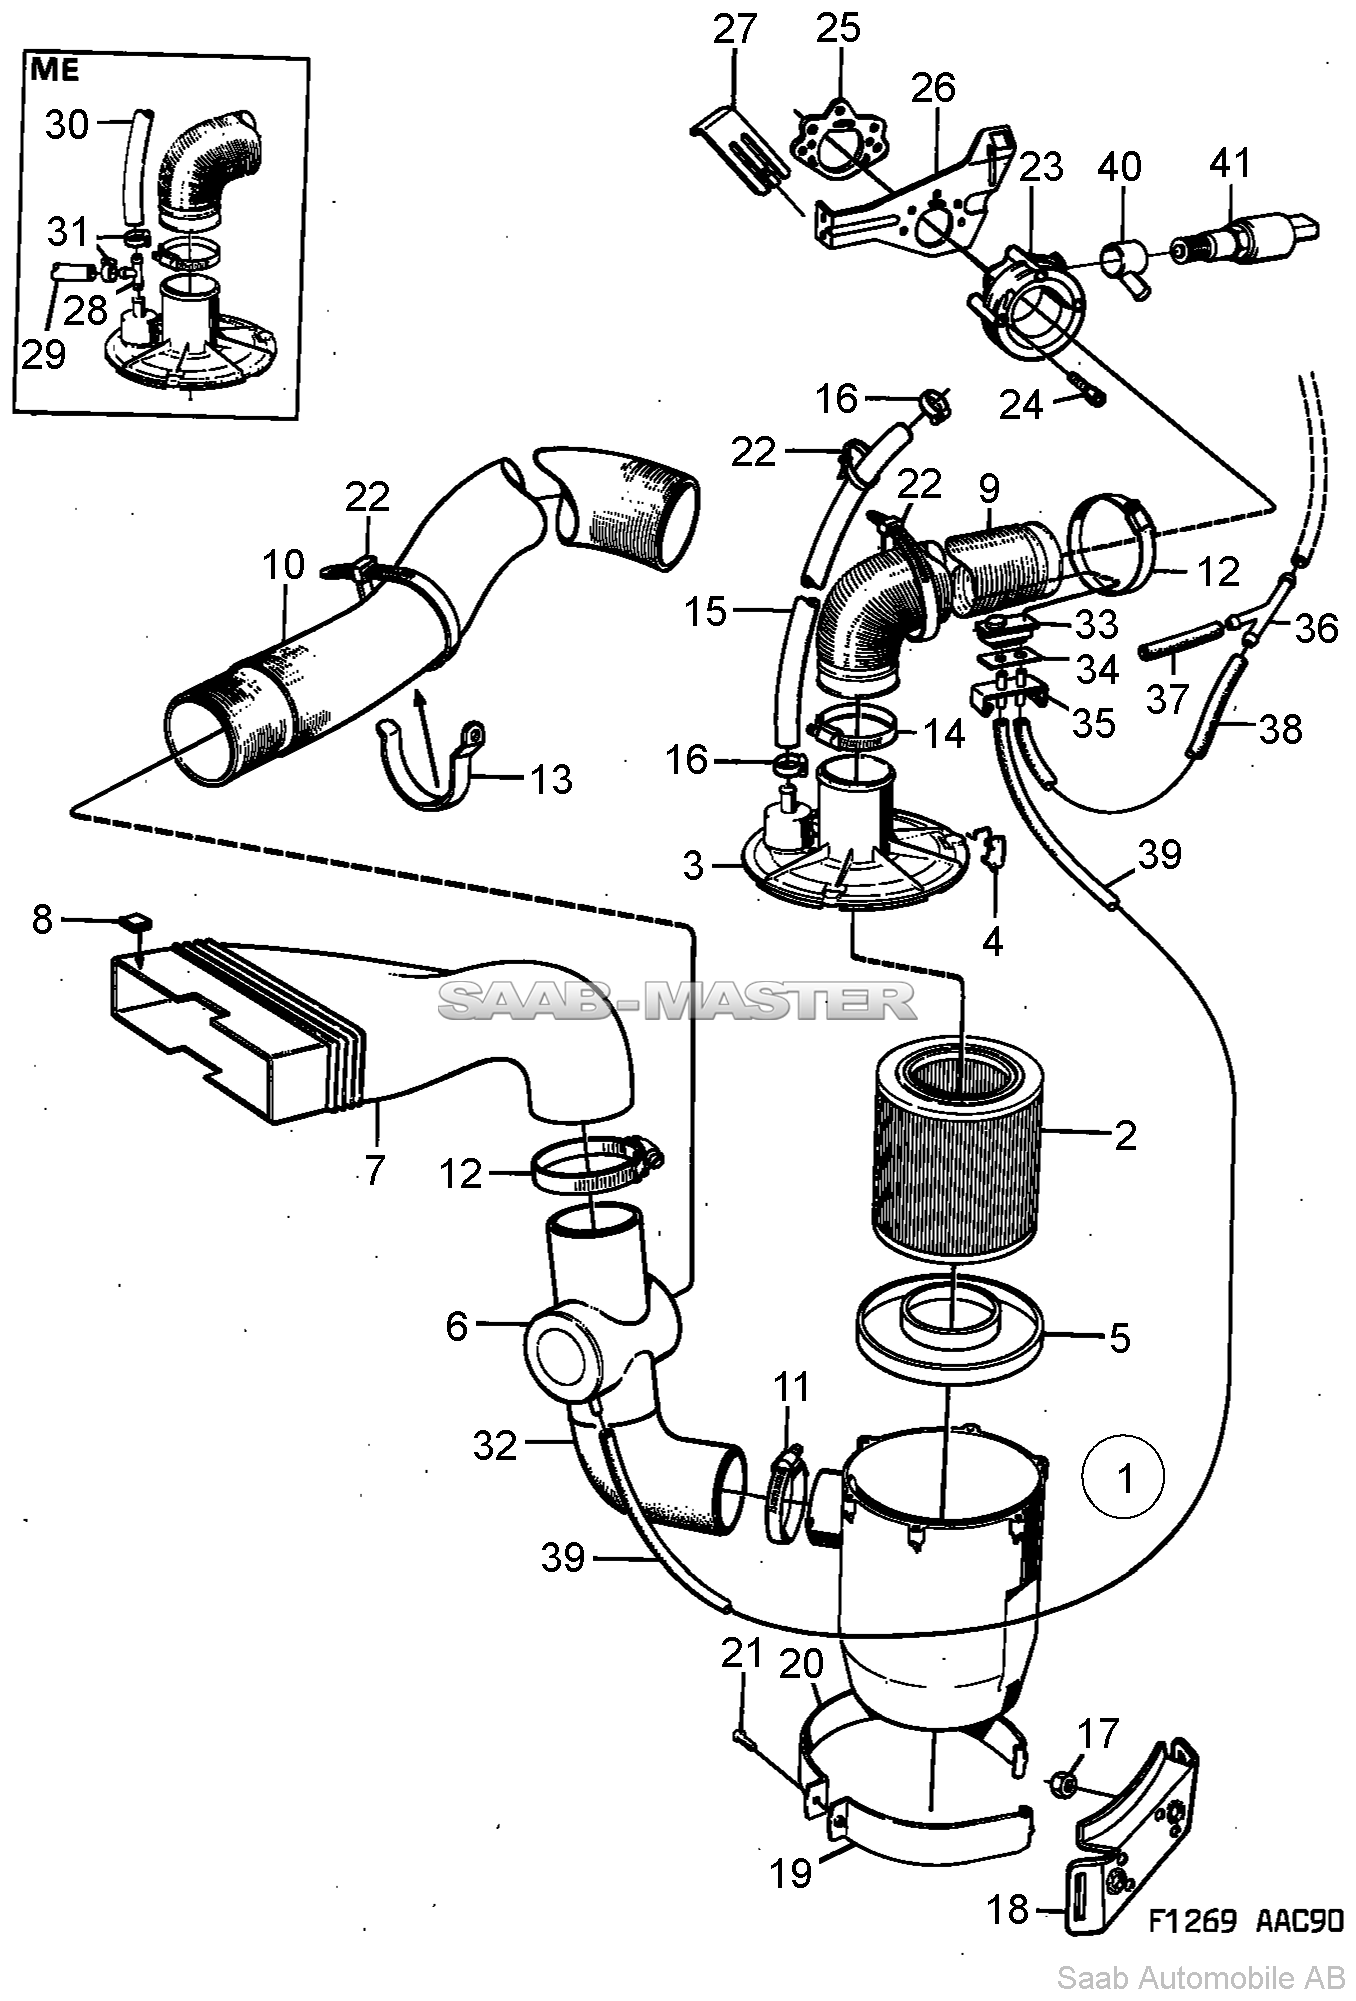 Воздухоочиститель - карбюраторный двигатель   Касается также Кабриолет 1994